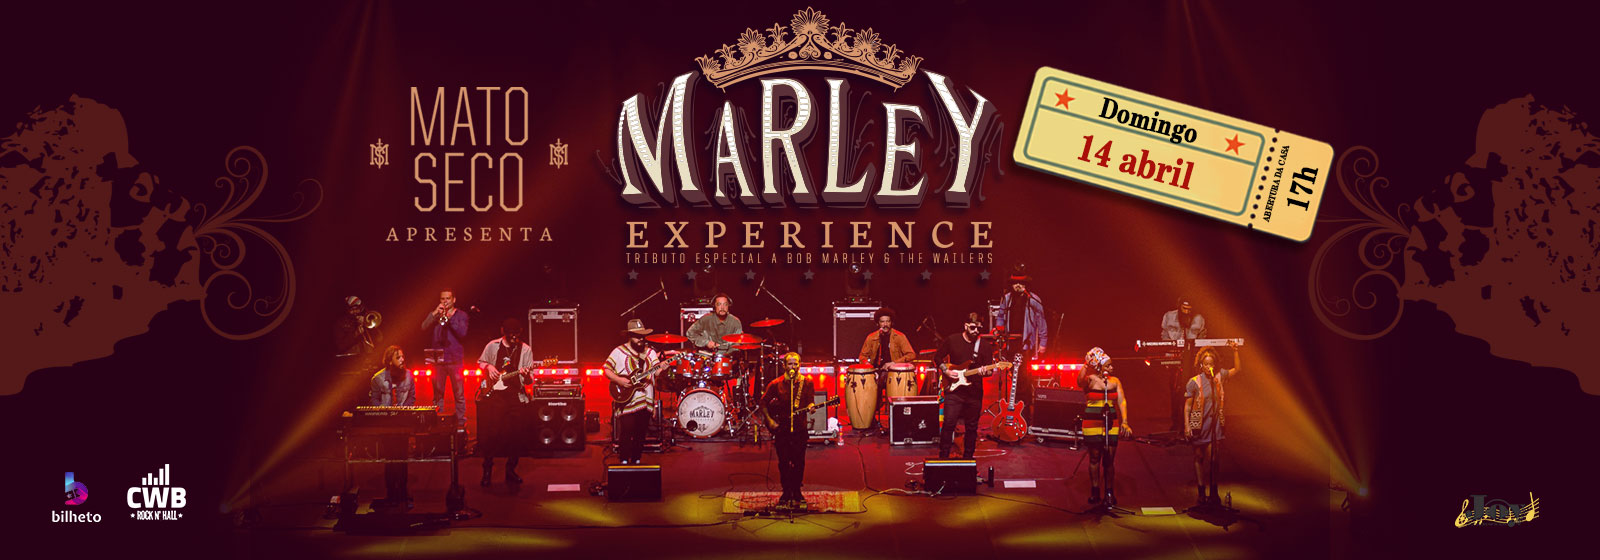 Mato seco - Bob Marley Experience 